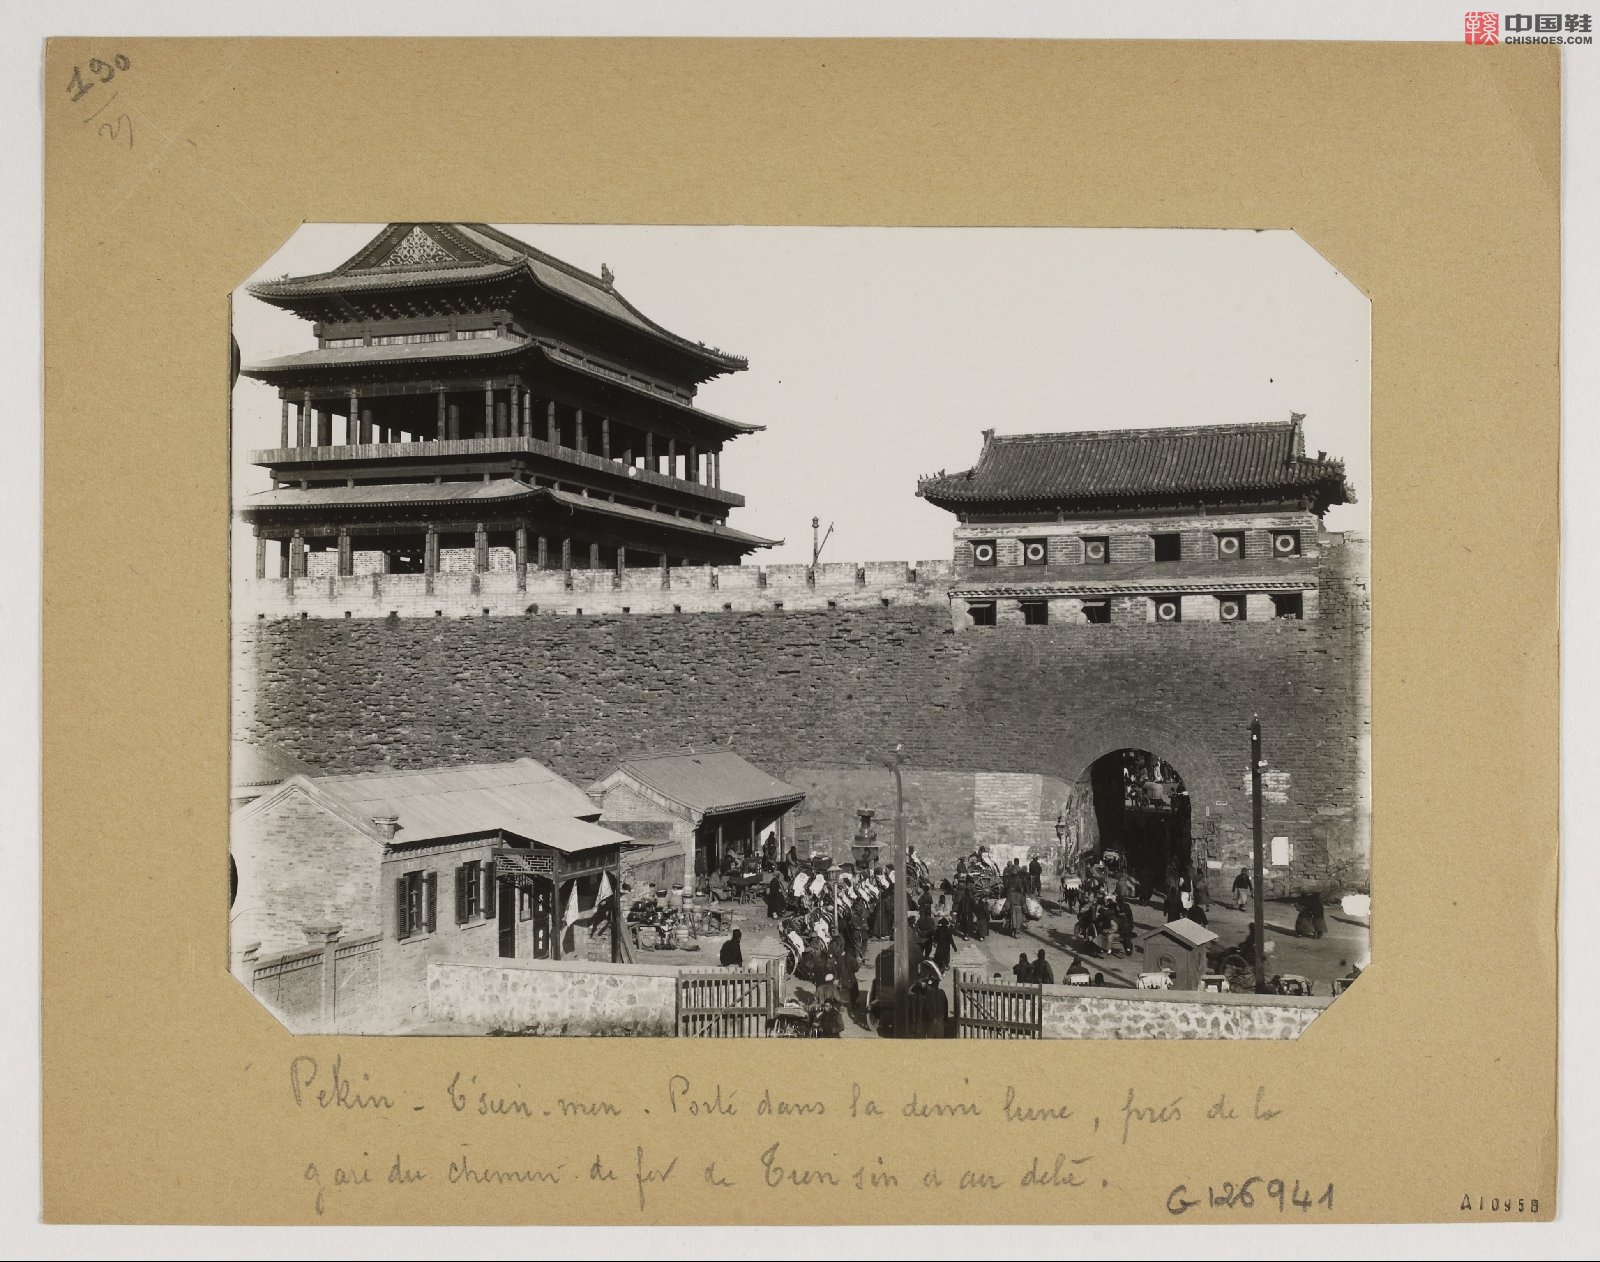 拉里贝的中国影像记录.415幅.By Firmin Laribe.1900-1910年_Page_406.jpg